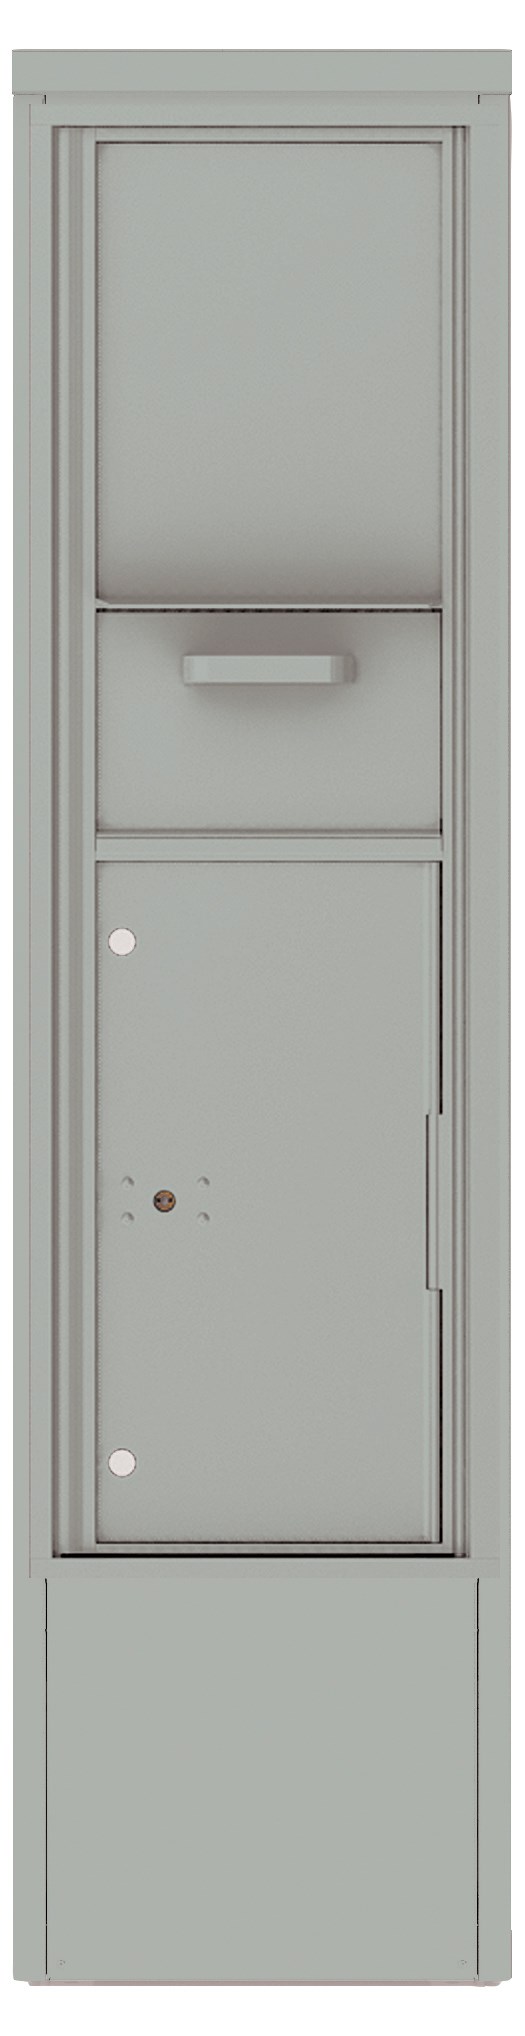 4C15S-HOP-D 4C Hopper Style Collection / Drop Box Silver Speck